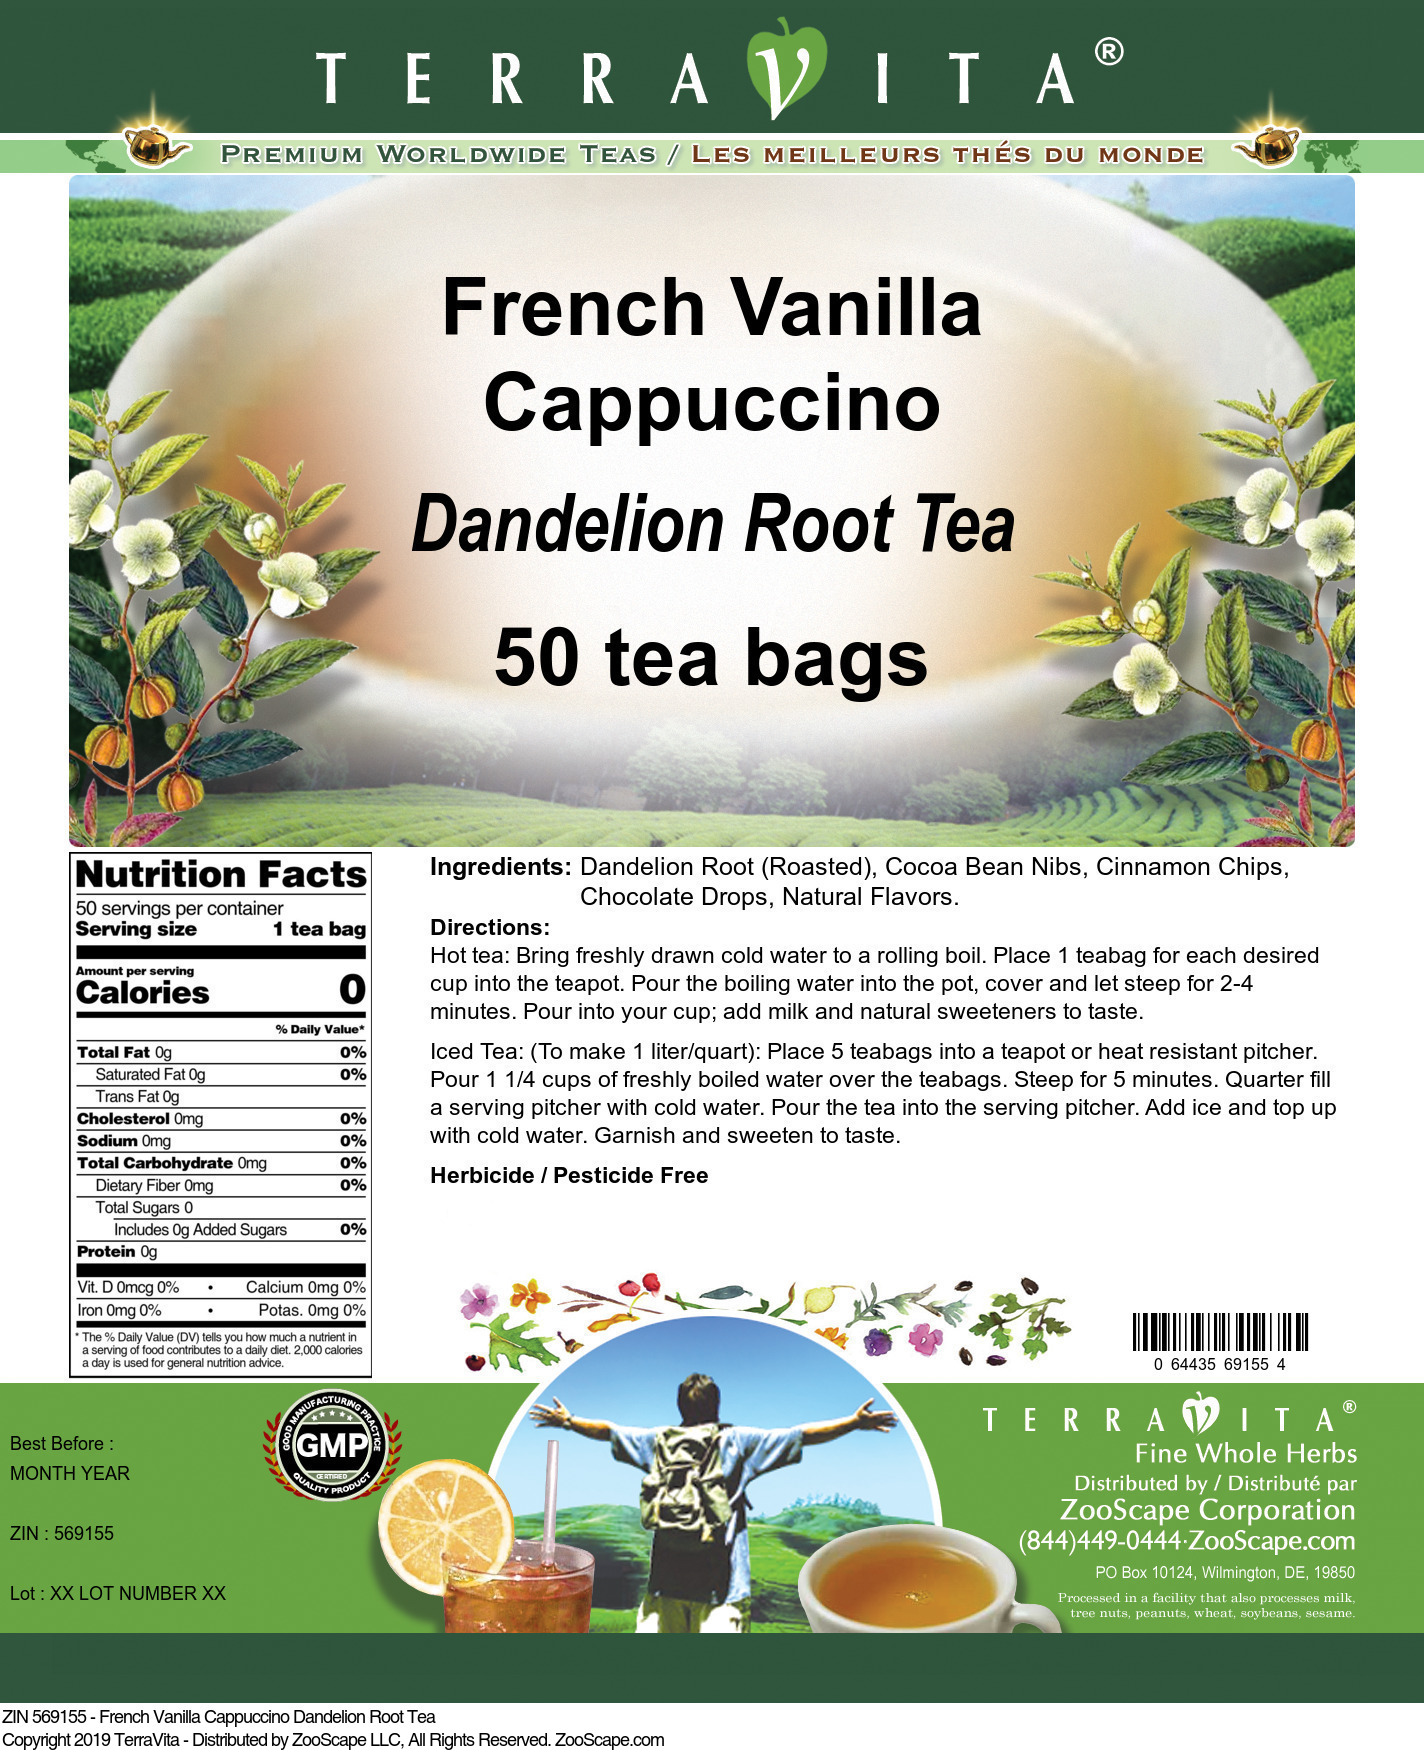 French Vanilla Cappuccino Dandelion Root Tea - Label